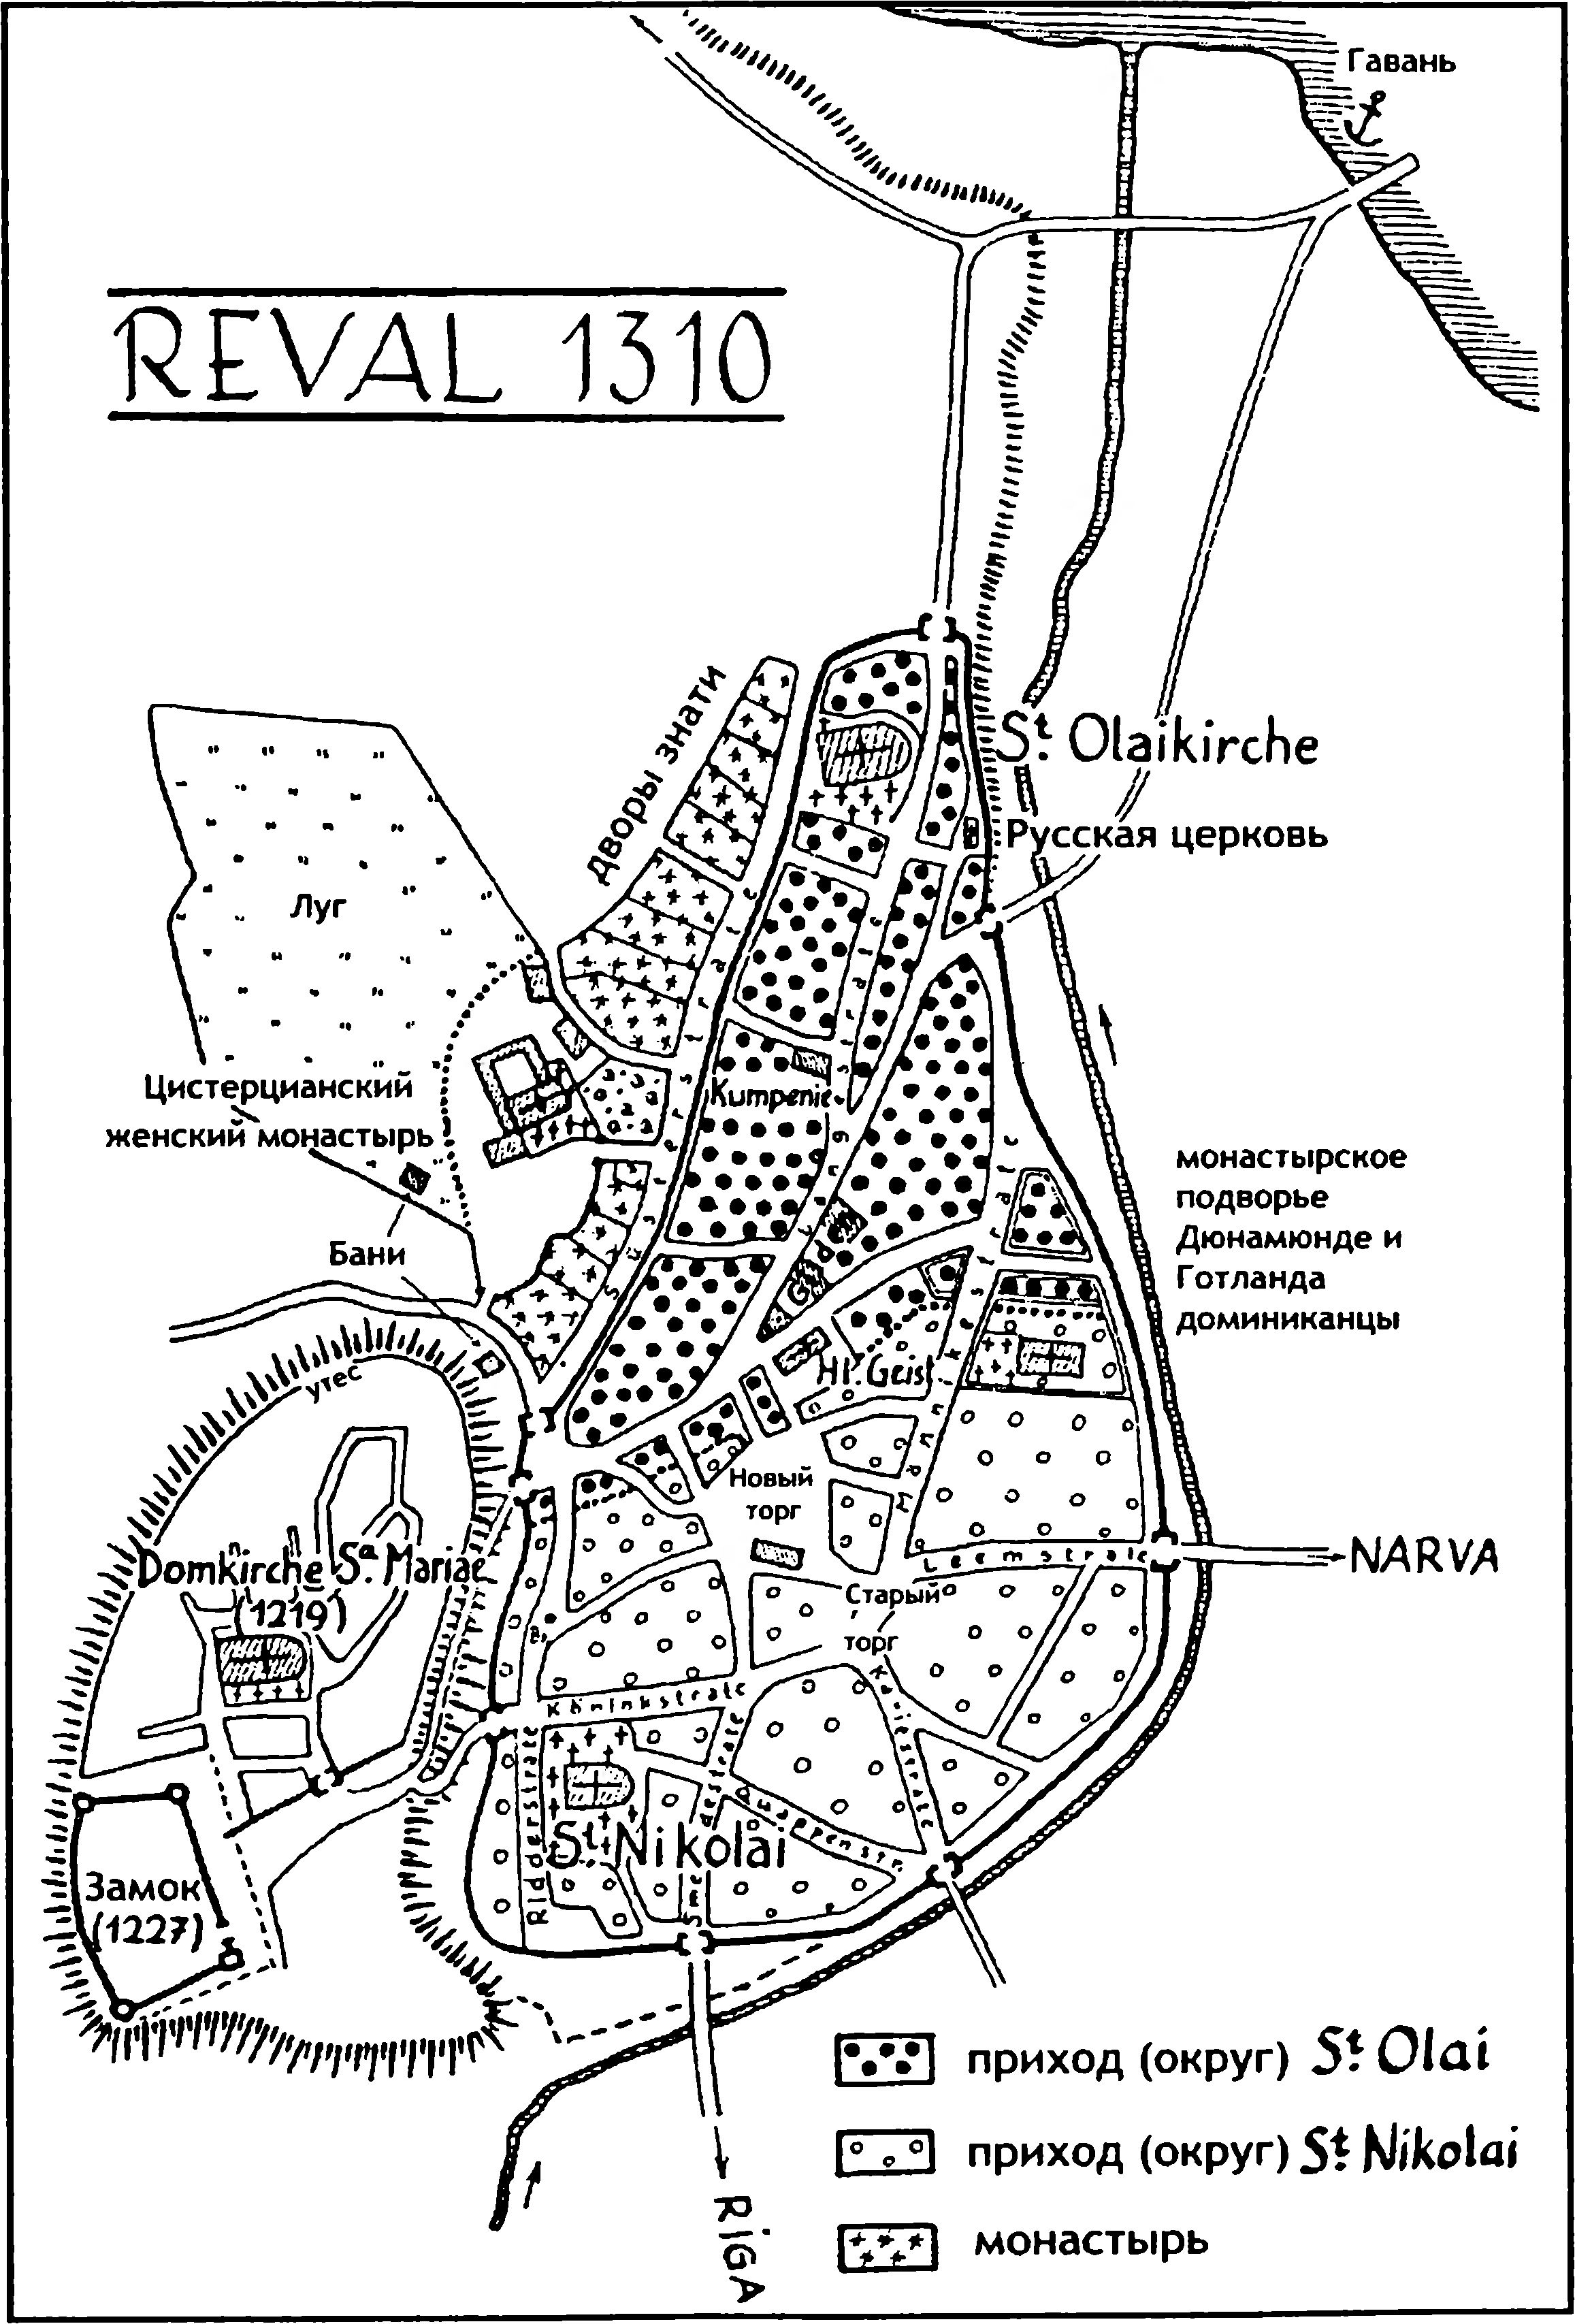 Реконструкция плана Ревеля на 1310 г.